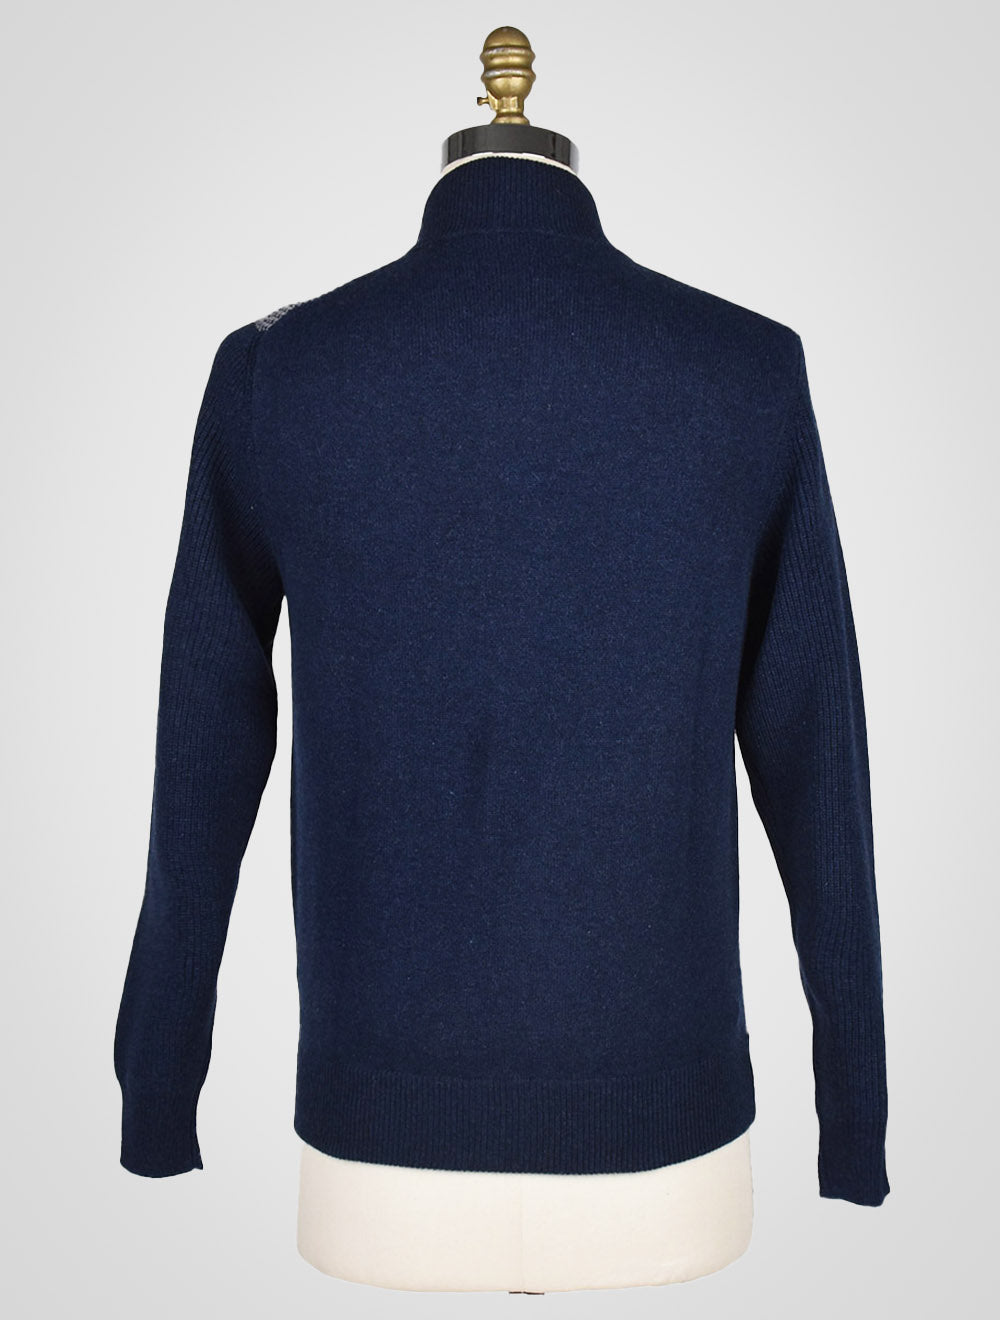 Չեզարե Ատտոլինի կապույտ մոխրագույն Cashmere Sweater Full zip